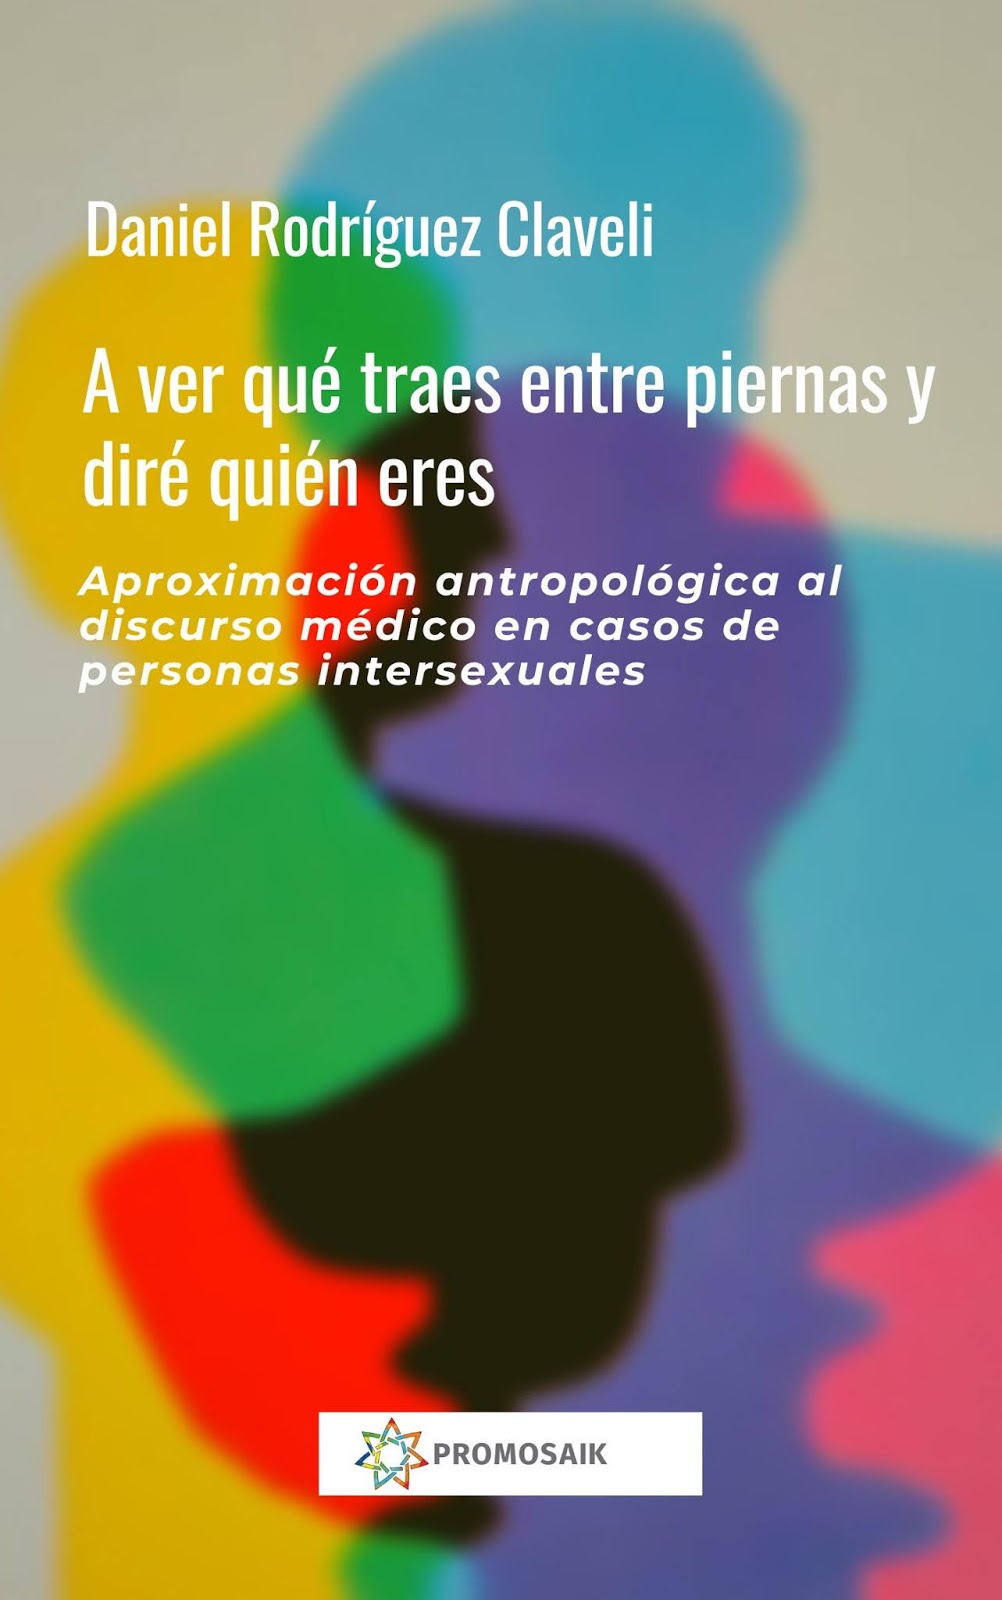 Conversación con Daniel Rodríguez Claveli a propósito de la reciente publicación de su libro “A ver qué traes entre piernas y diré quién eres. Aproximación antropológica al discurso médico en casos de personas intersexuales.”